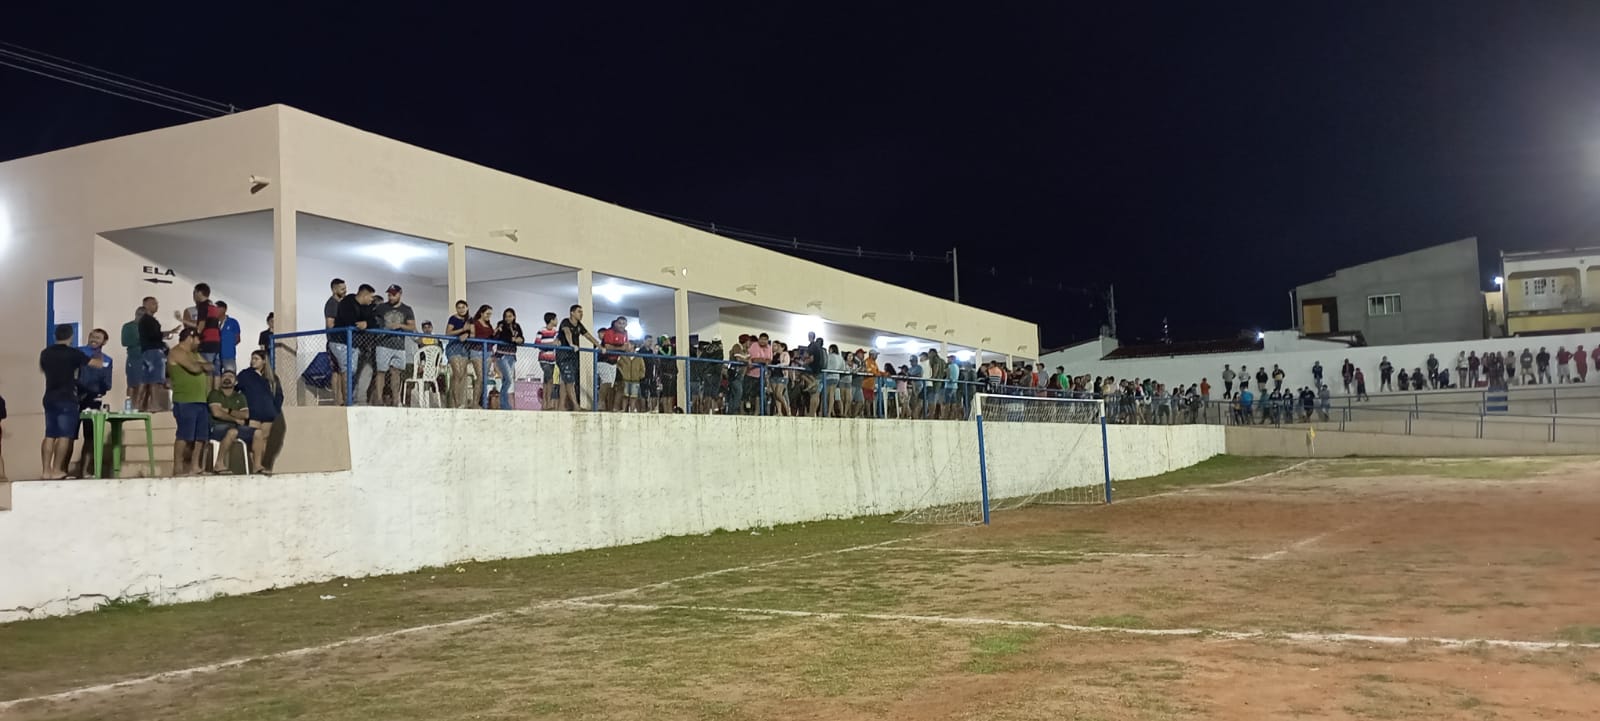 Futebol em Cerro Corá está recebendo bom publico no estádio, confiram resultados